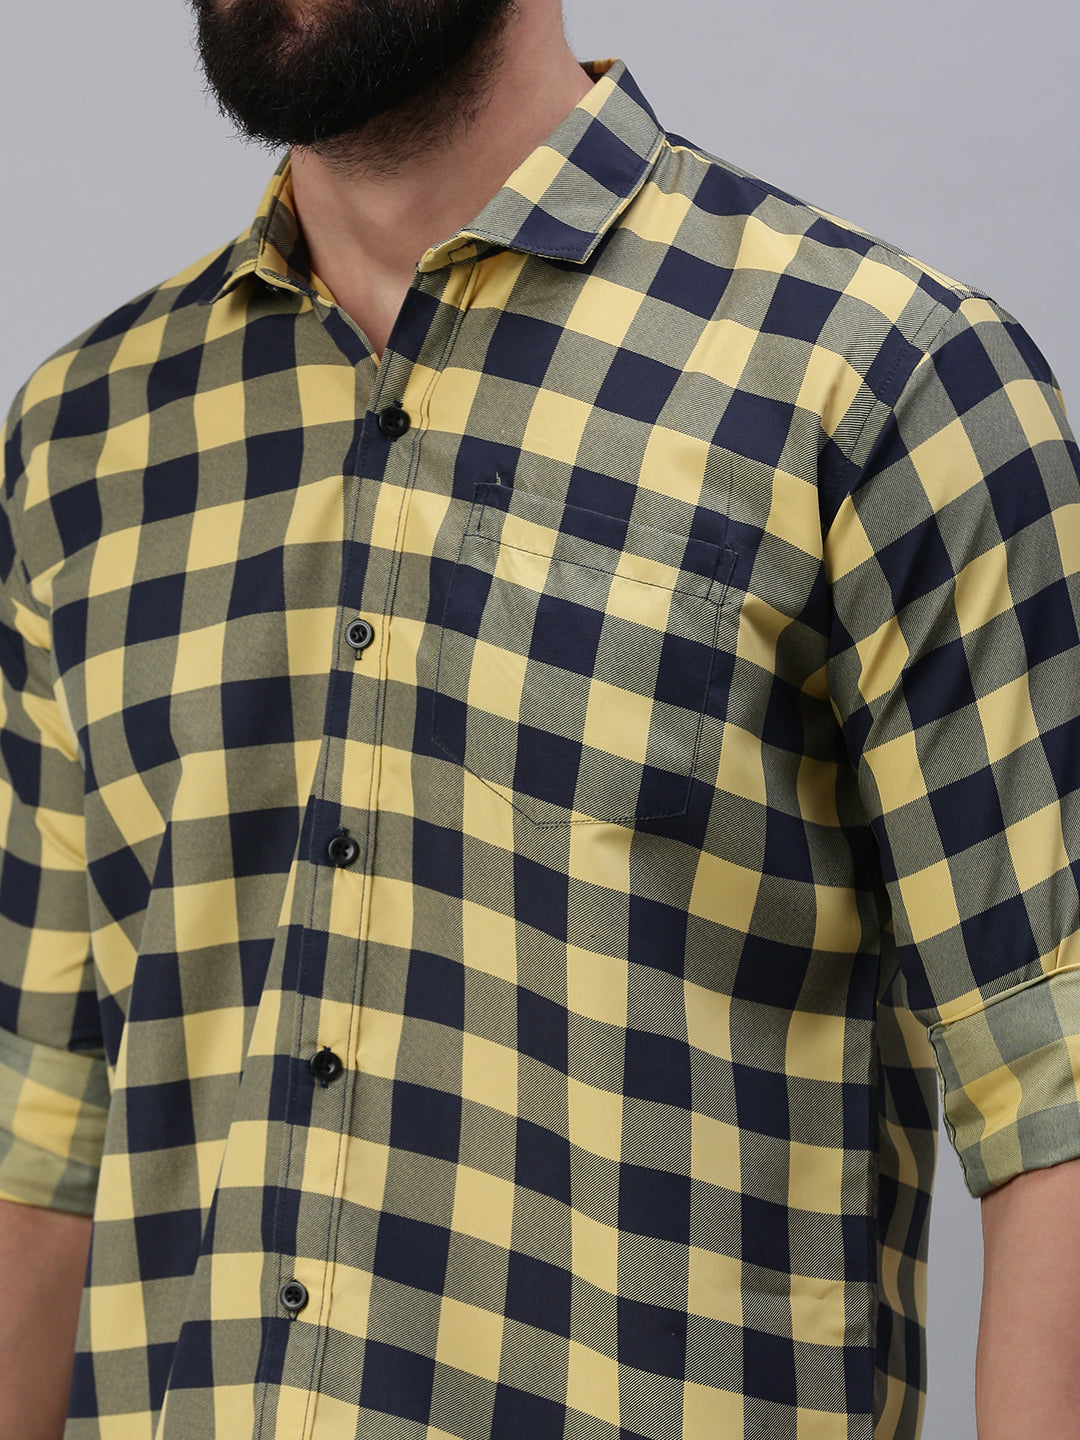 Full sleeve yellow checks men's shirt - Rodzen